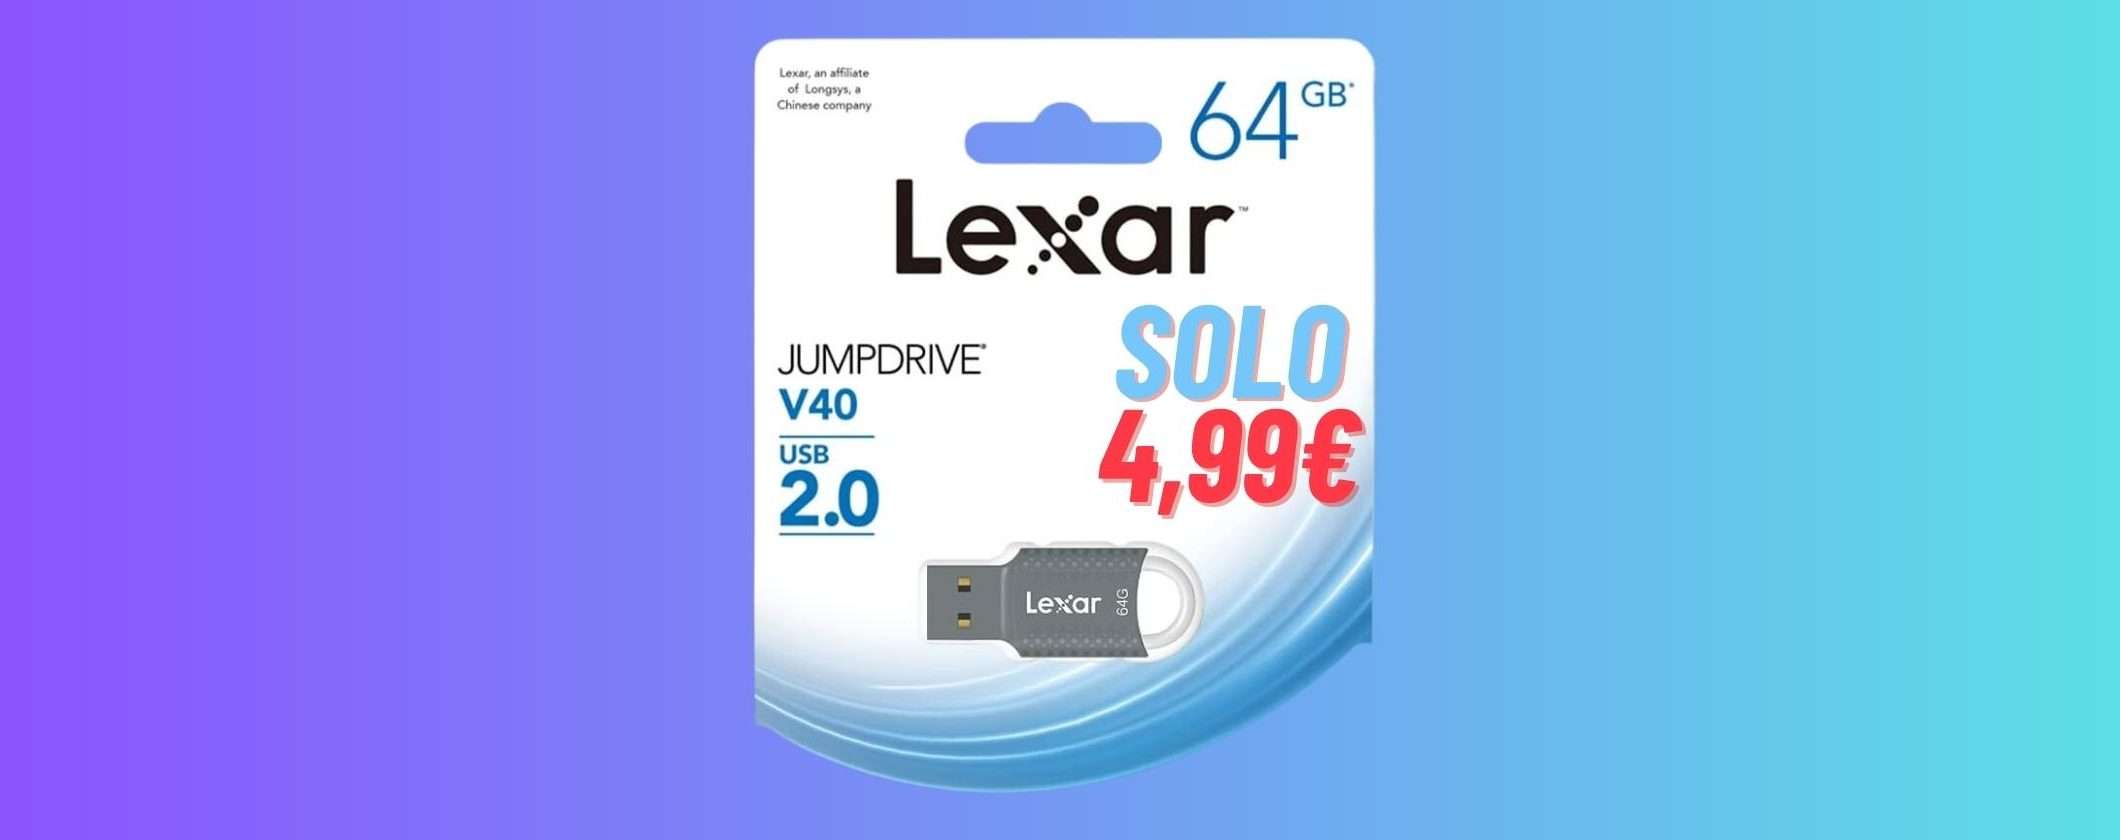 Chiavetta USB Lexar 64GB: a 4€ è una FOLLIA da Prime Day